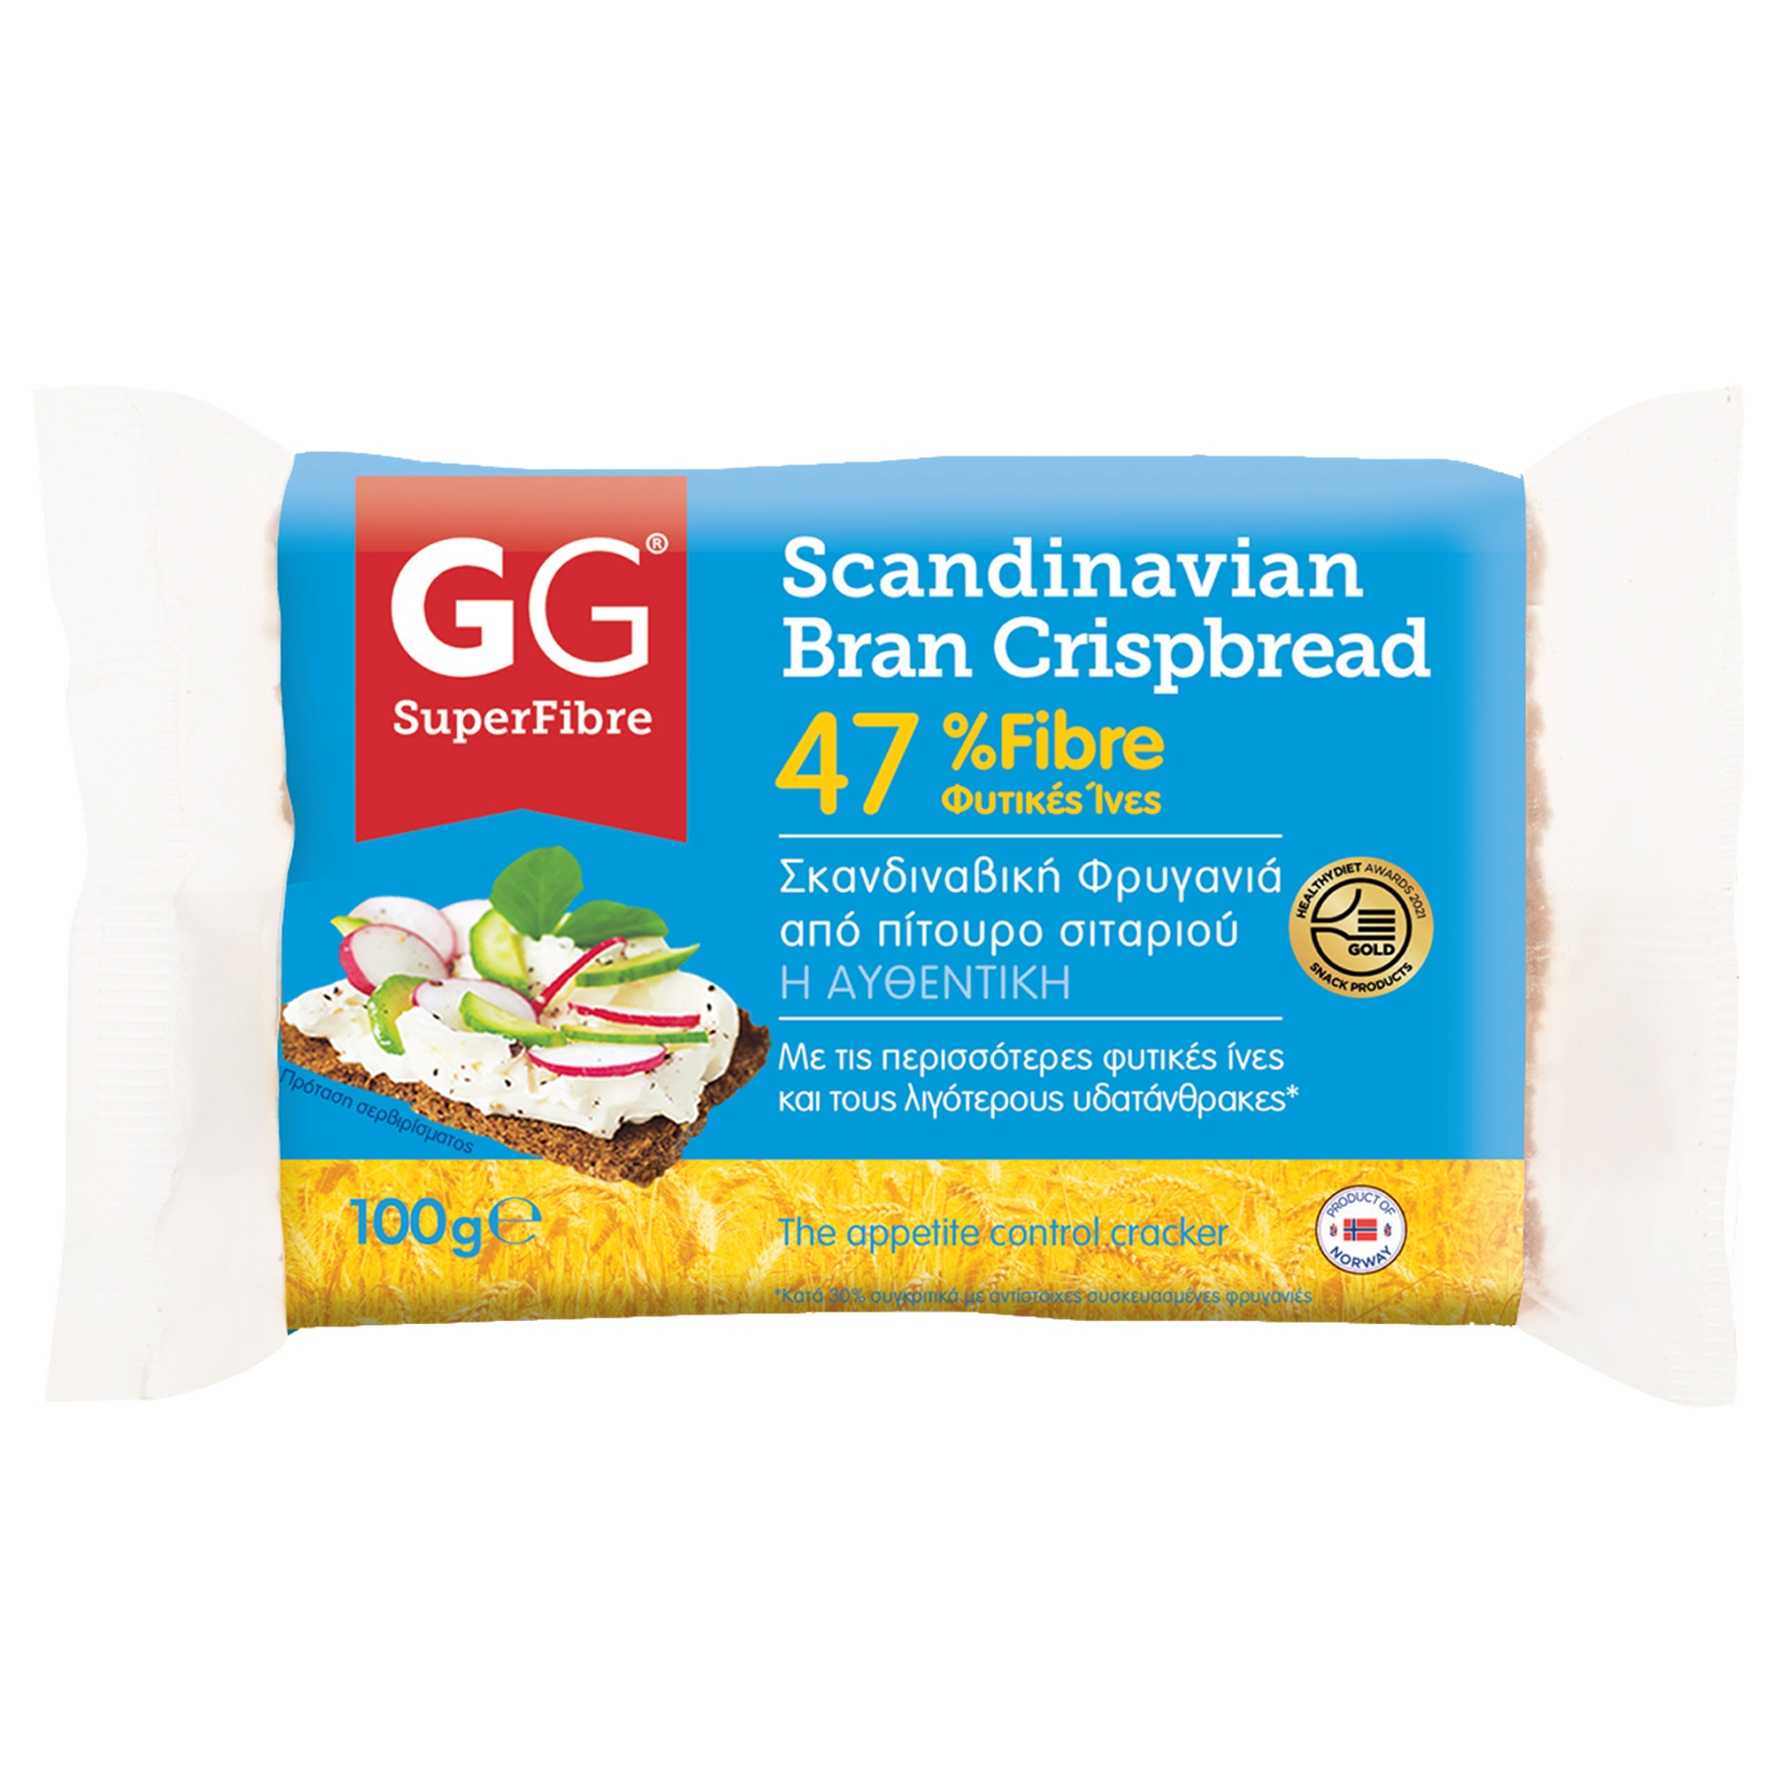 Αυθεντικές Σκανδιναβικές Φρυγανιές 47% Φυτικές Ίνες από Ακατέργαστο Πίτουρο Σιταριού